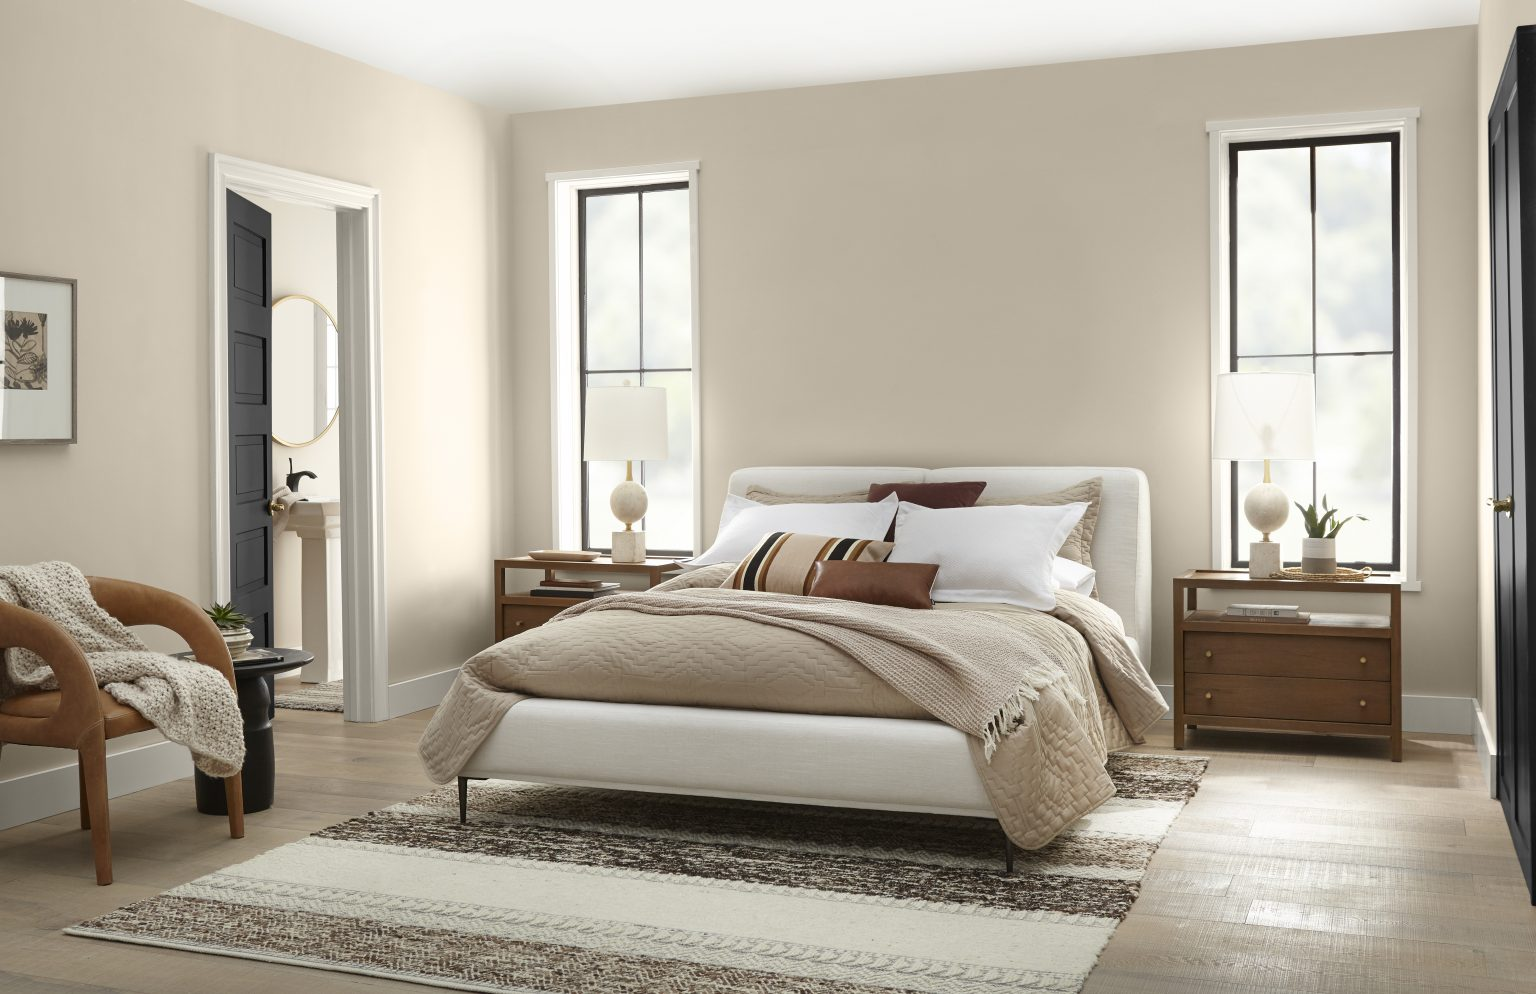 Penggunaan kombinasi pola warna dan material berteksur pada kamar tidur beige, via behr